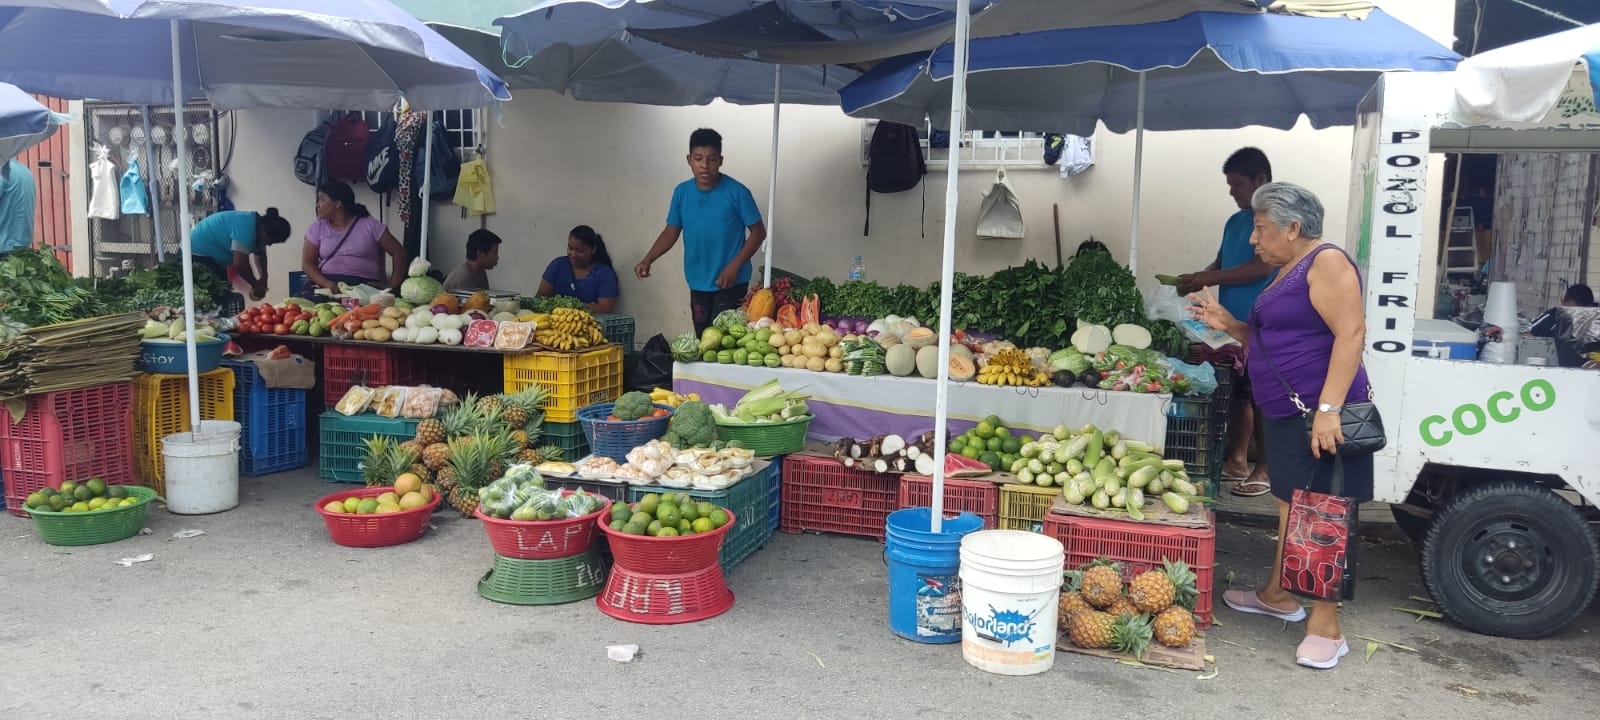 Tianguistas de Playa del Carmen se benefician con la inflación; venden sus productos más baratos